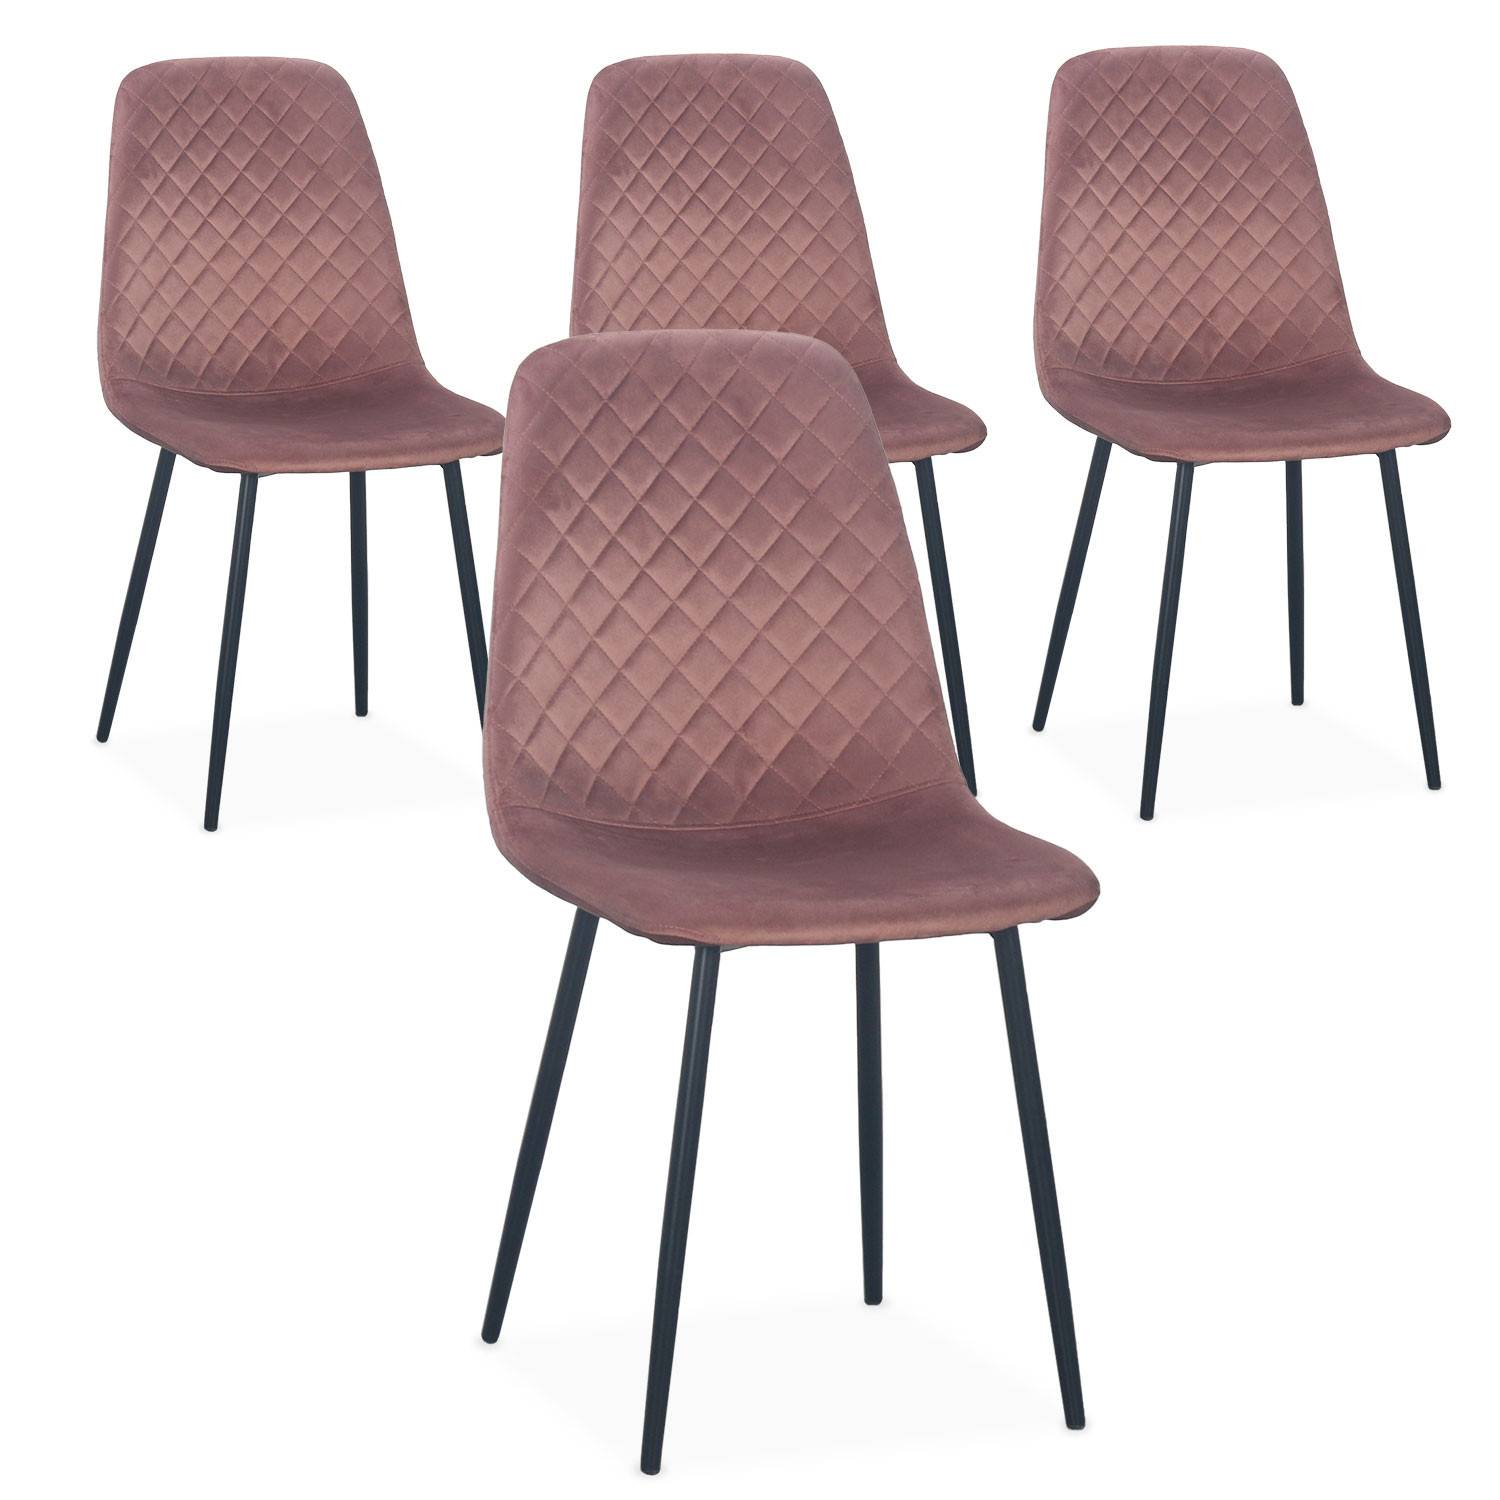 Juego de 4 sillas acolchadas de terciopelo rosa Noruega, patas negras